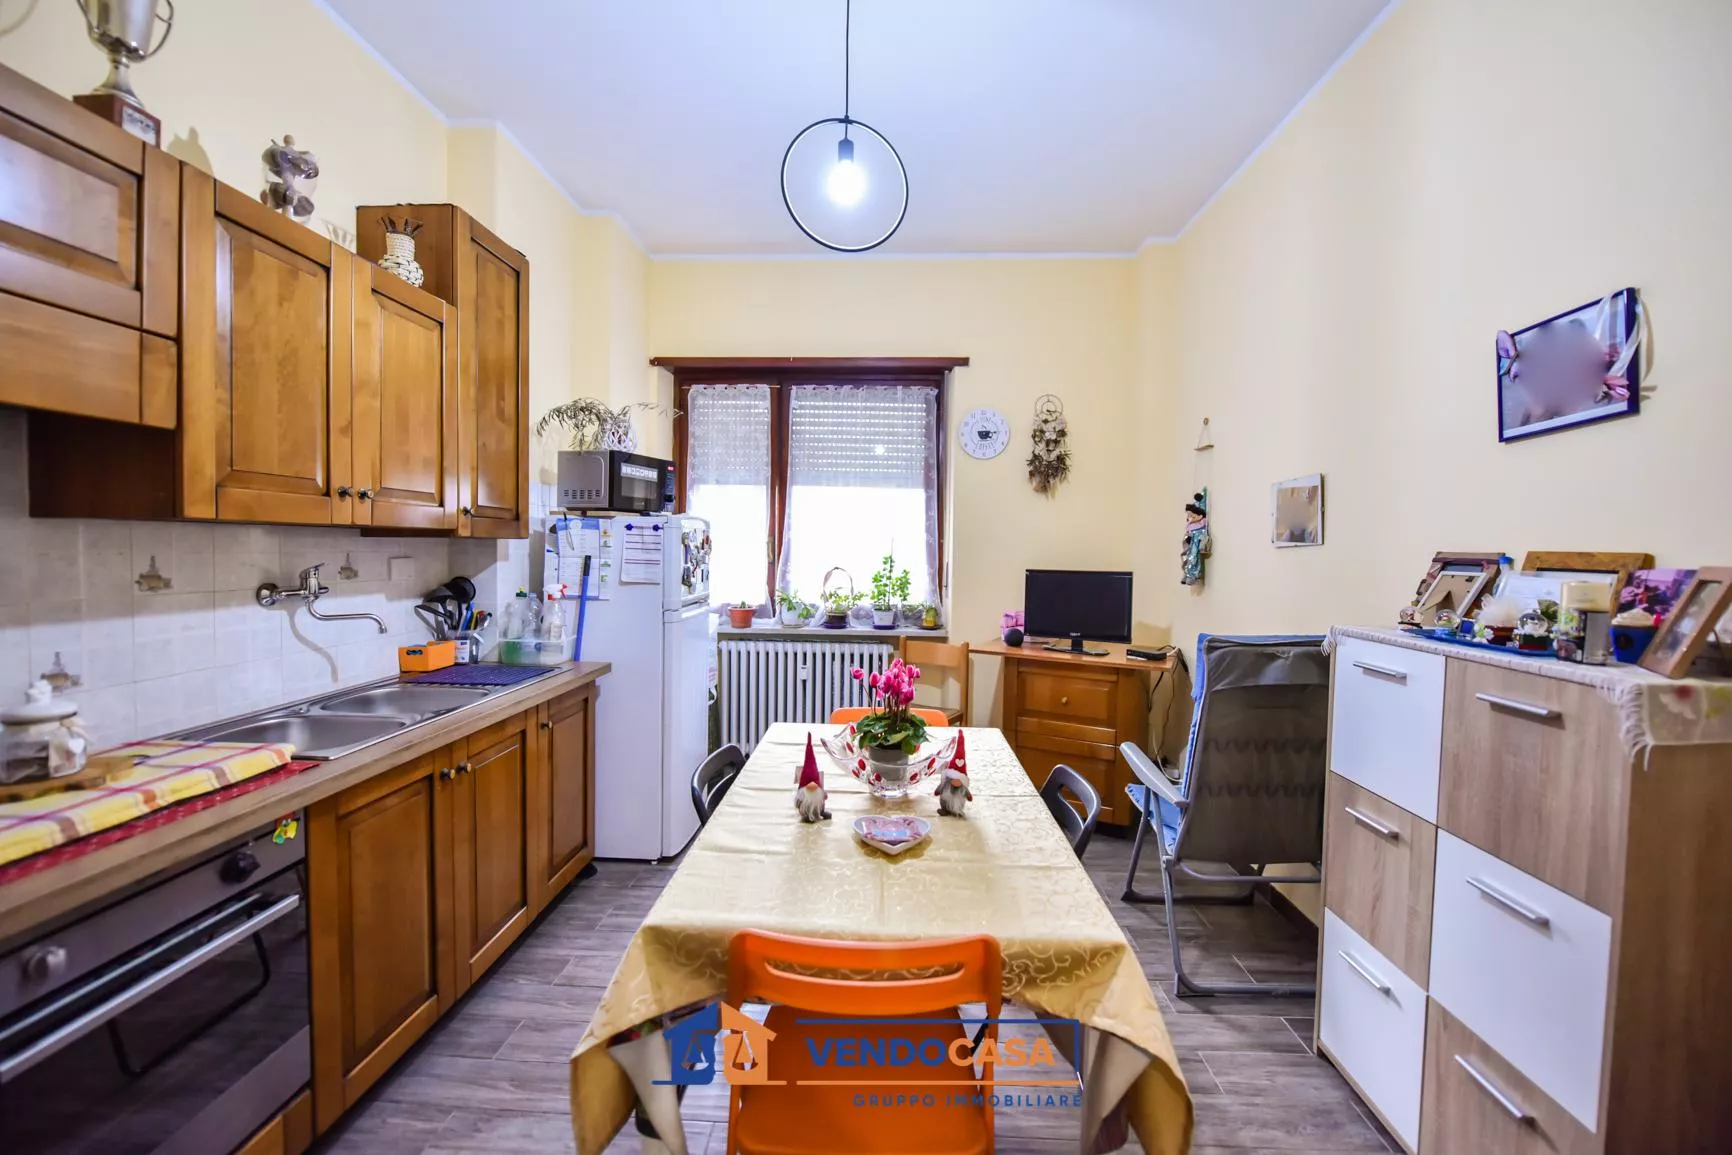 Immagine per Appartamento in vendita a Villastellone via Mazzini 9